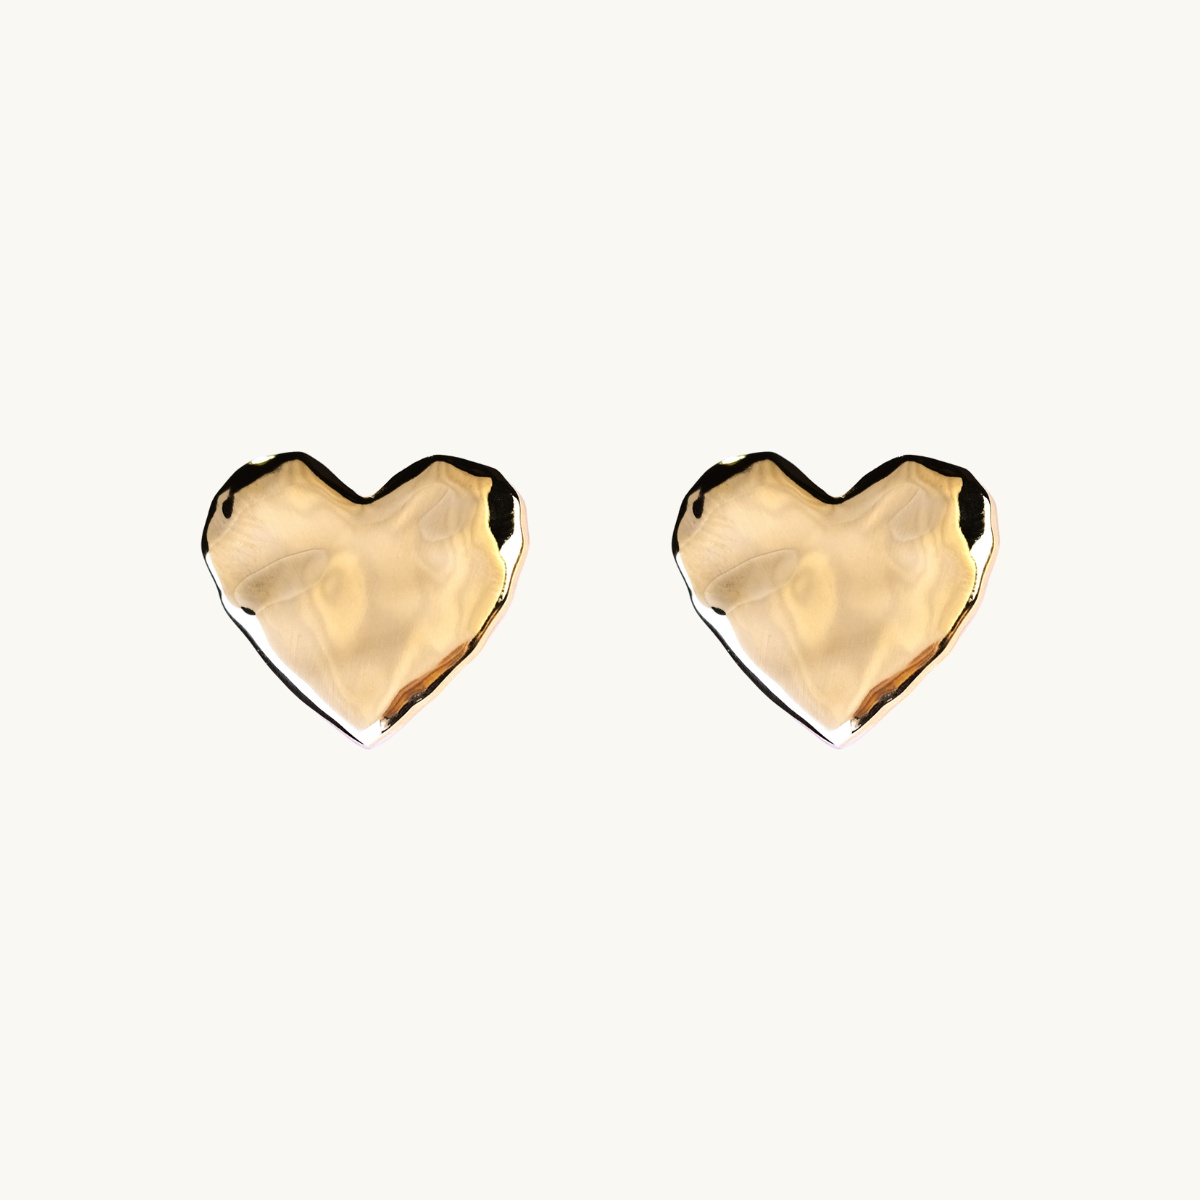 Heart earrings in gold